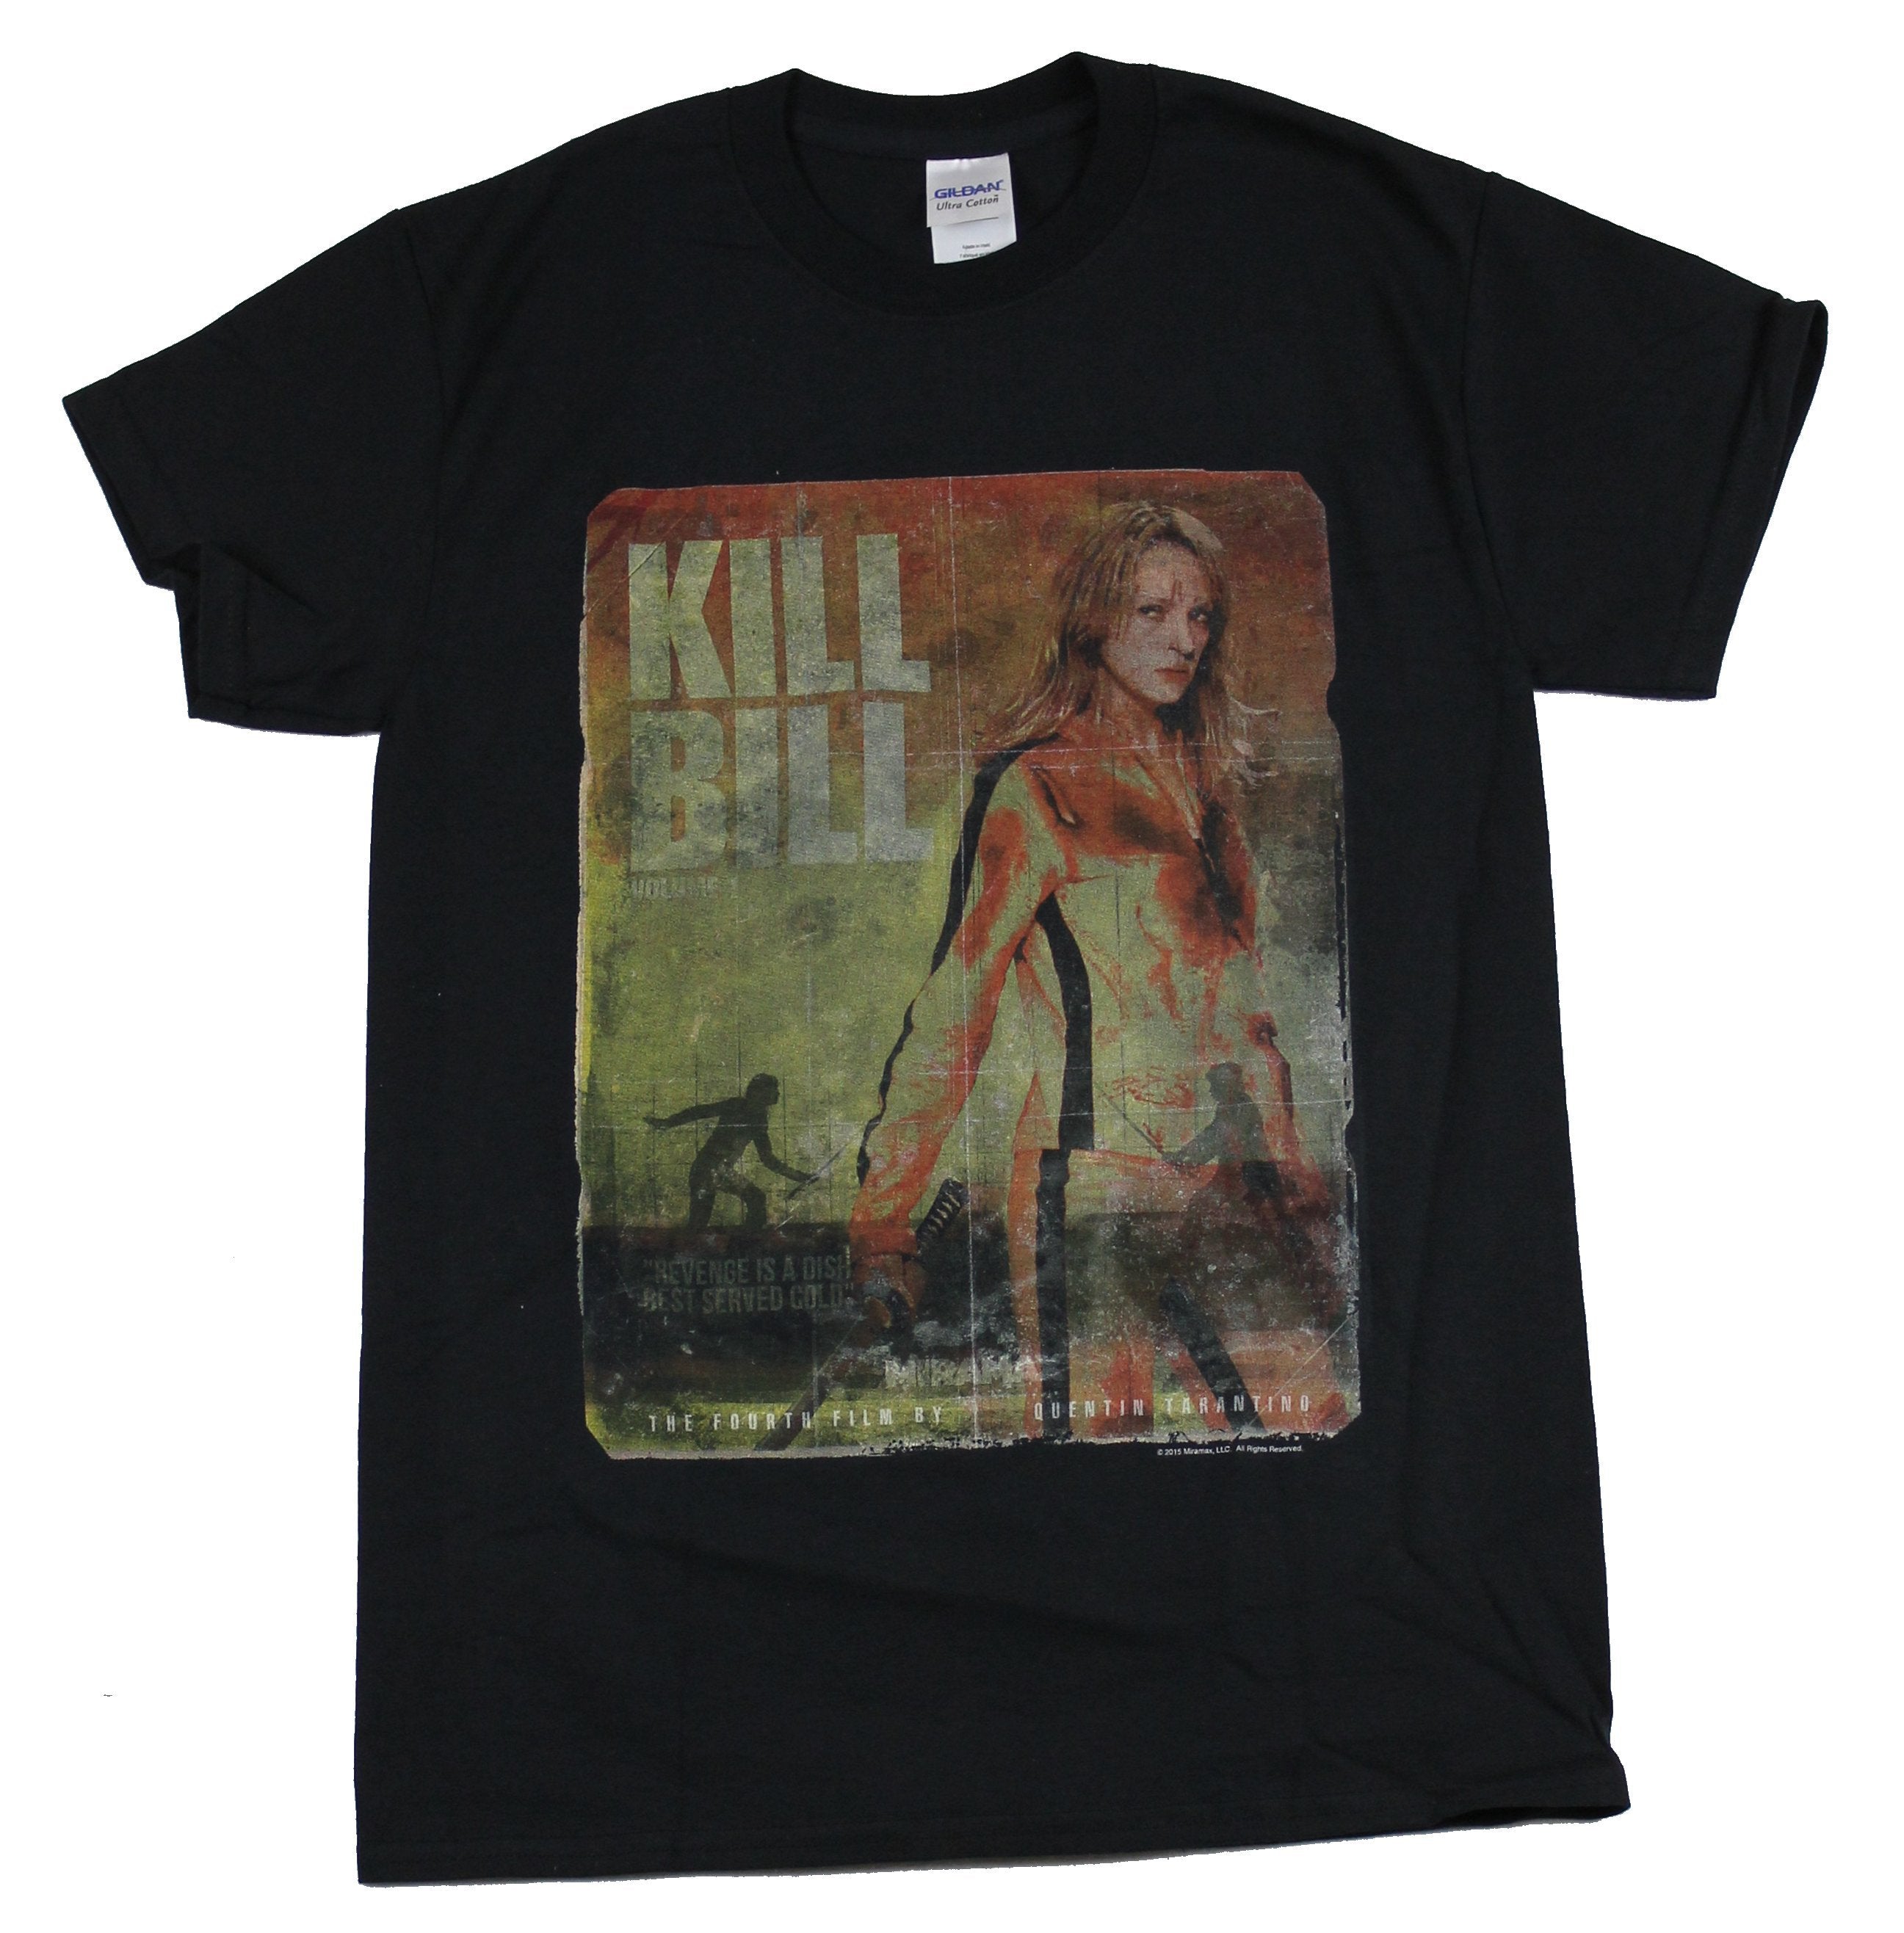 Kill Bill Mens T-Shirt - Distressed Blood Splattered Poster Image